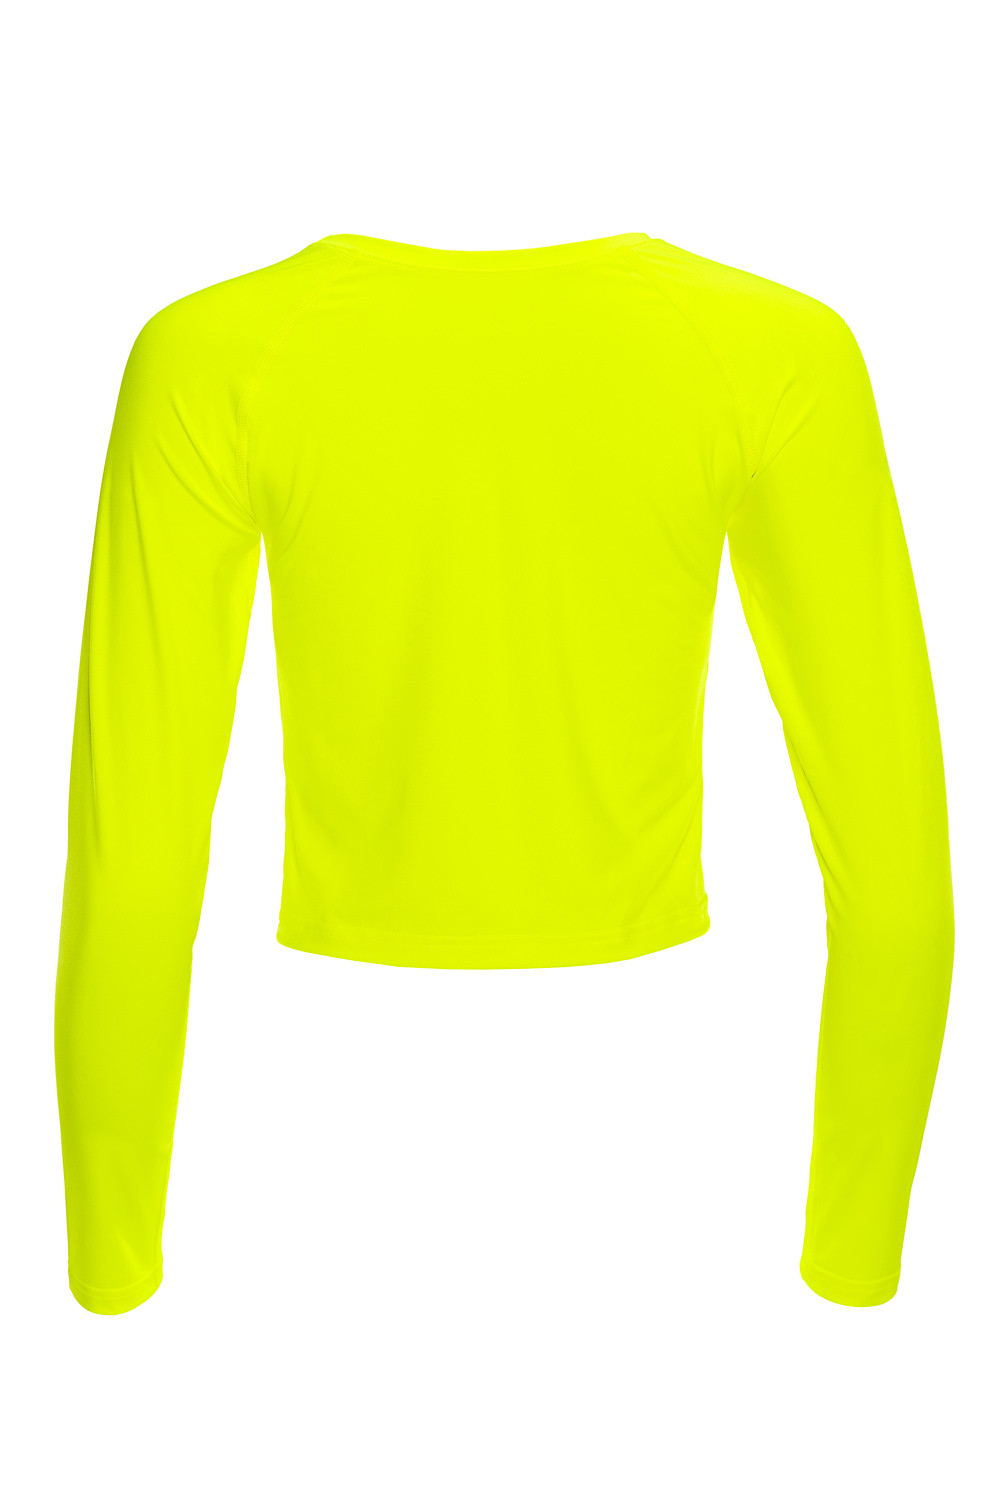 AET116, Sleeve neon Top Style gelb, Long Light Functional Cropped Slim Winshape